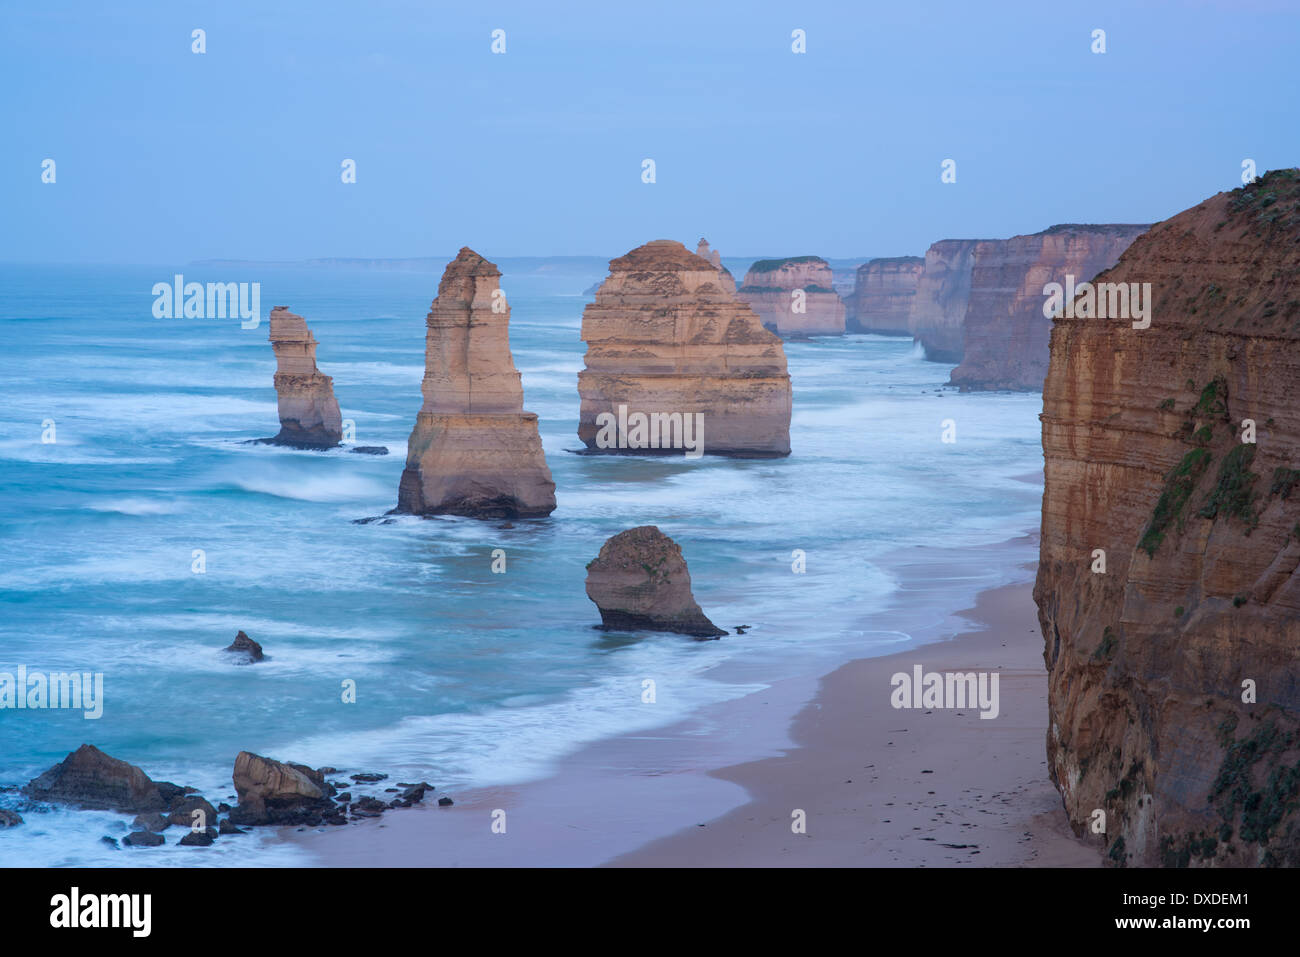 Dies ist ein Bild von den 12 Aposteln geologische Besonderheit im südlichen Australien. Stockfoto